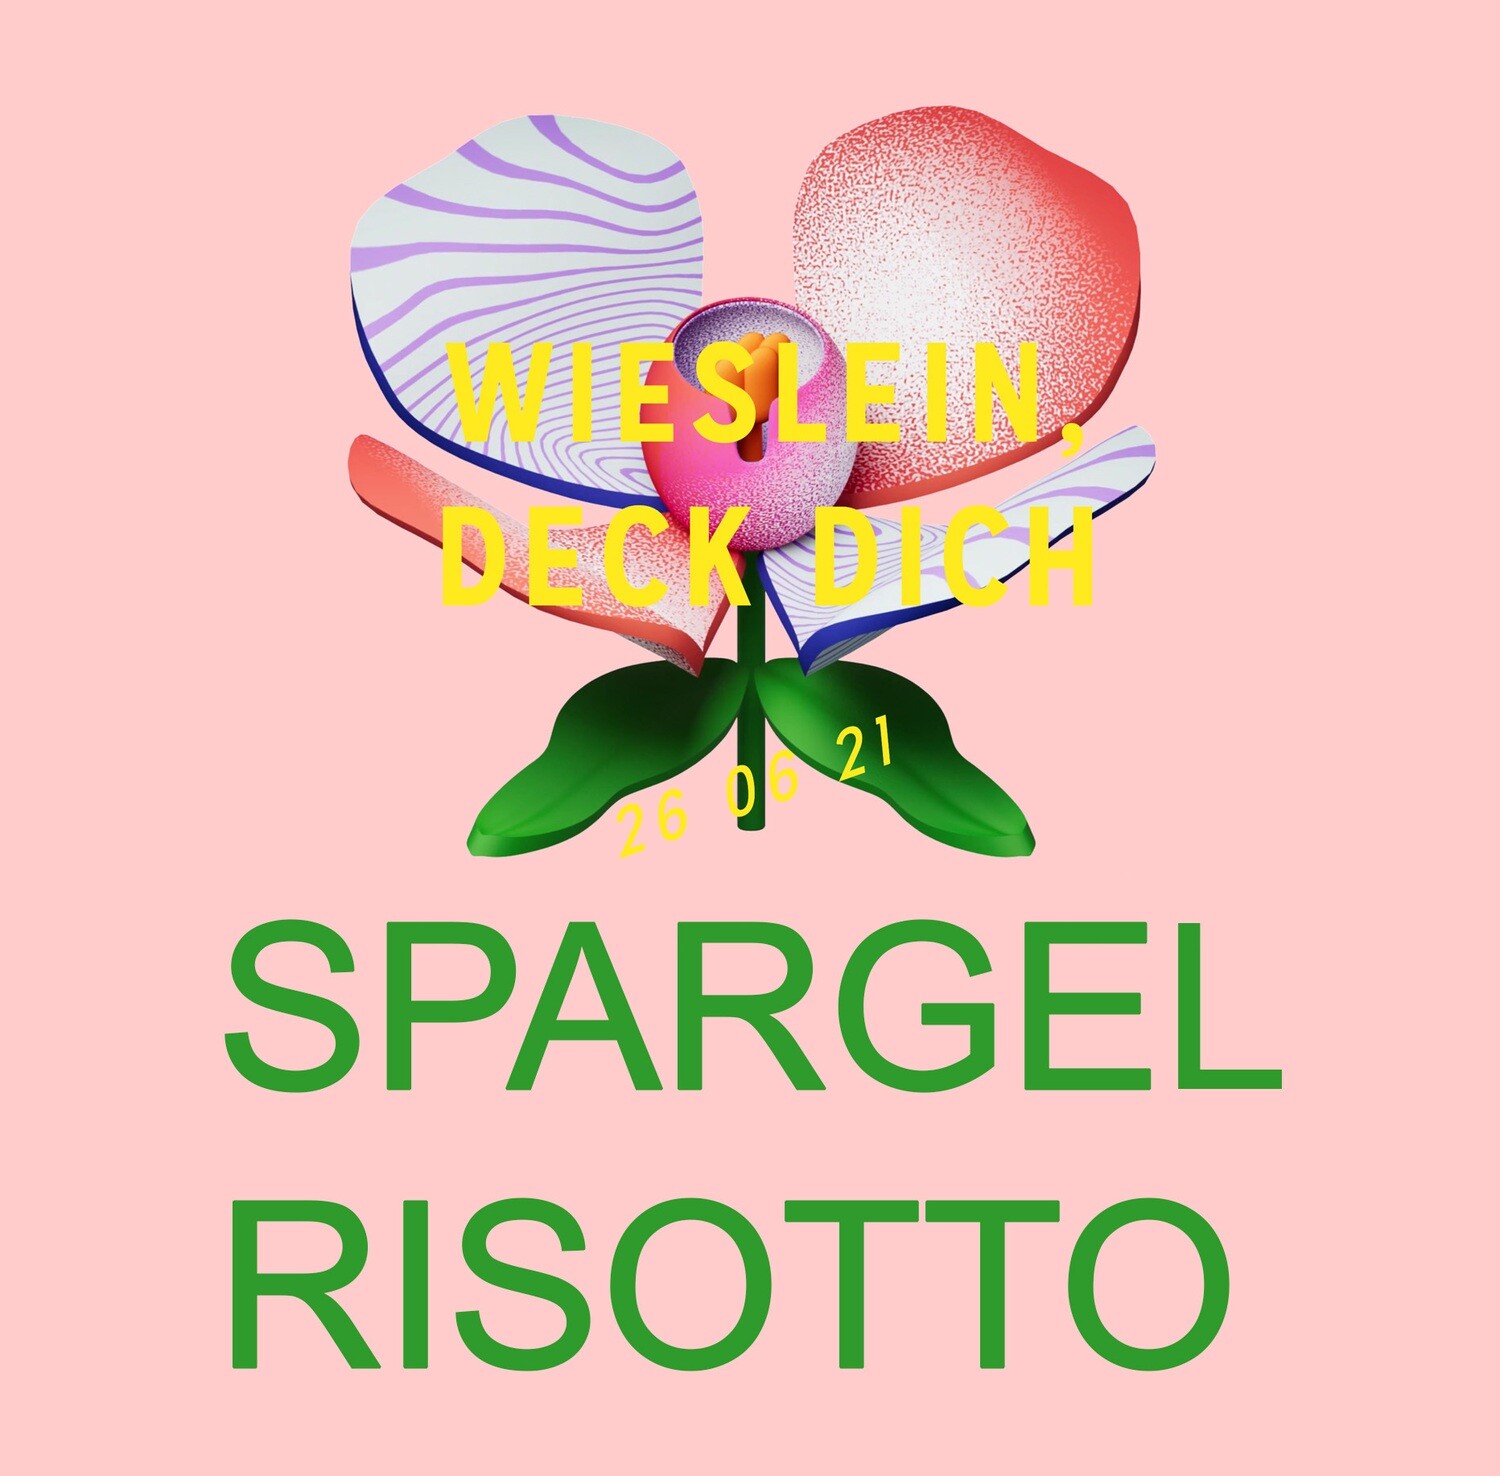 Spargelrisotto - Wieslein,deck Dich